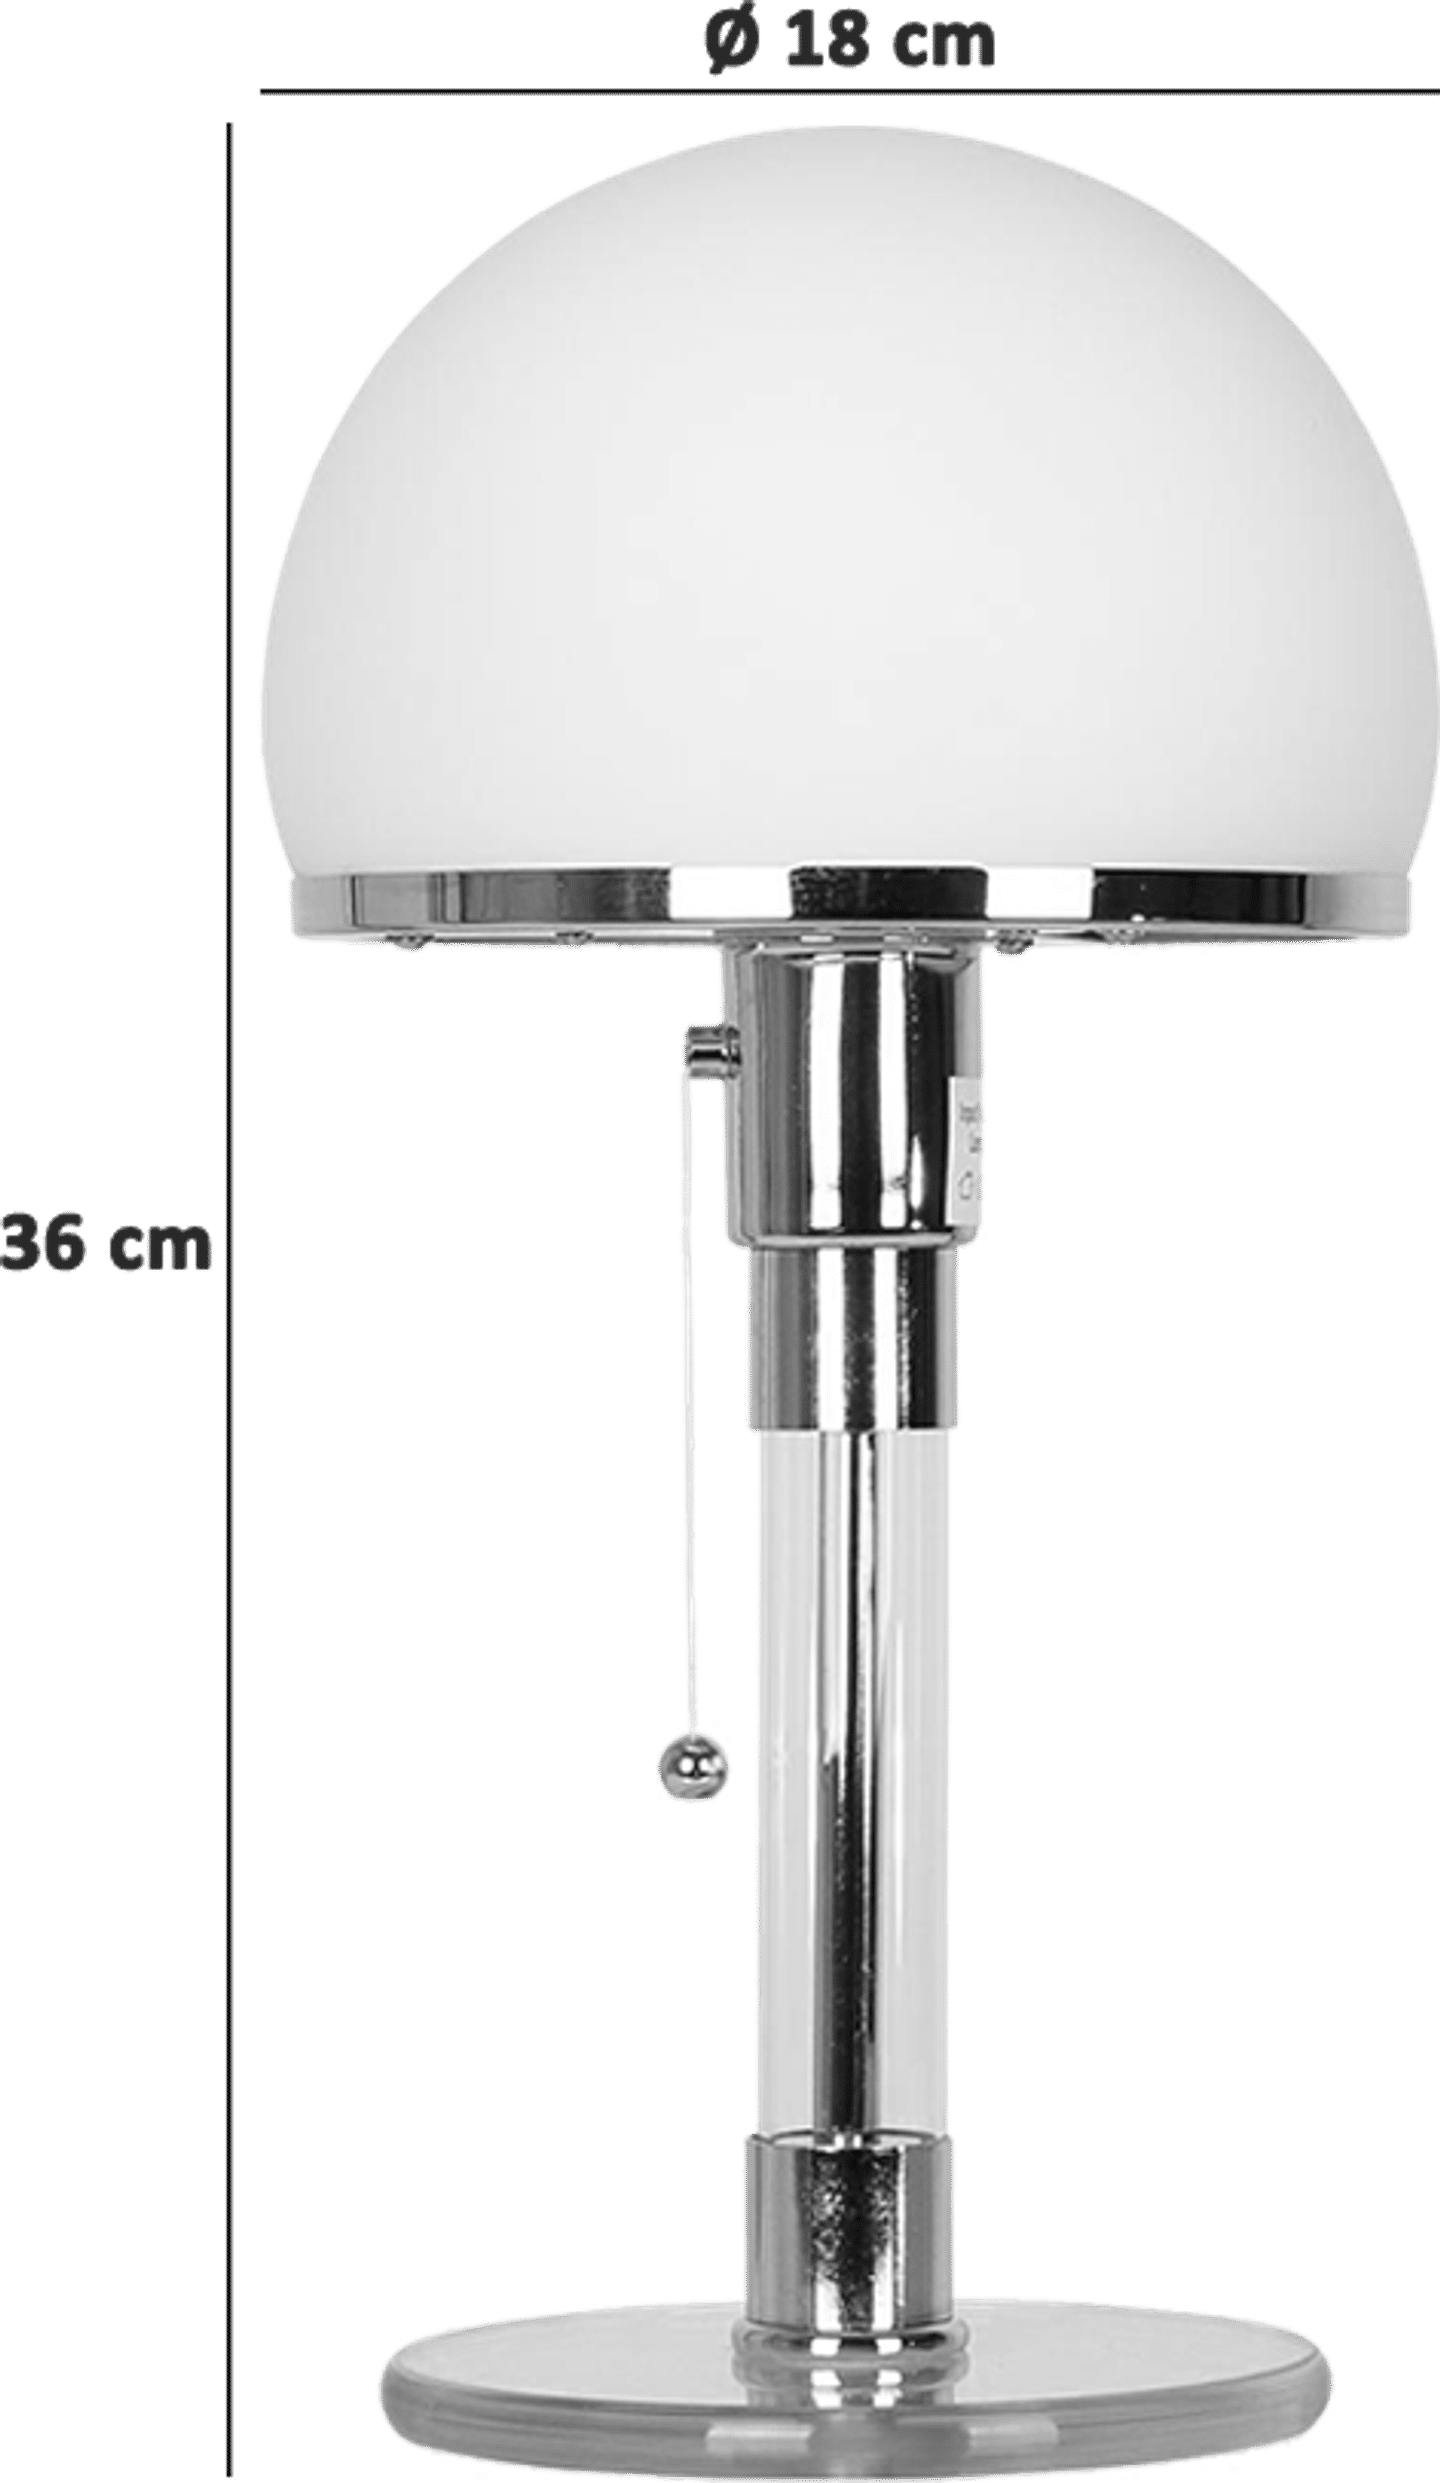 W24 Style Globe Lamp White image.